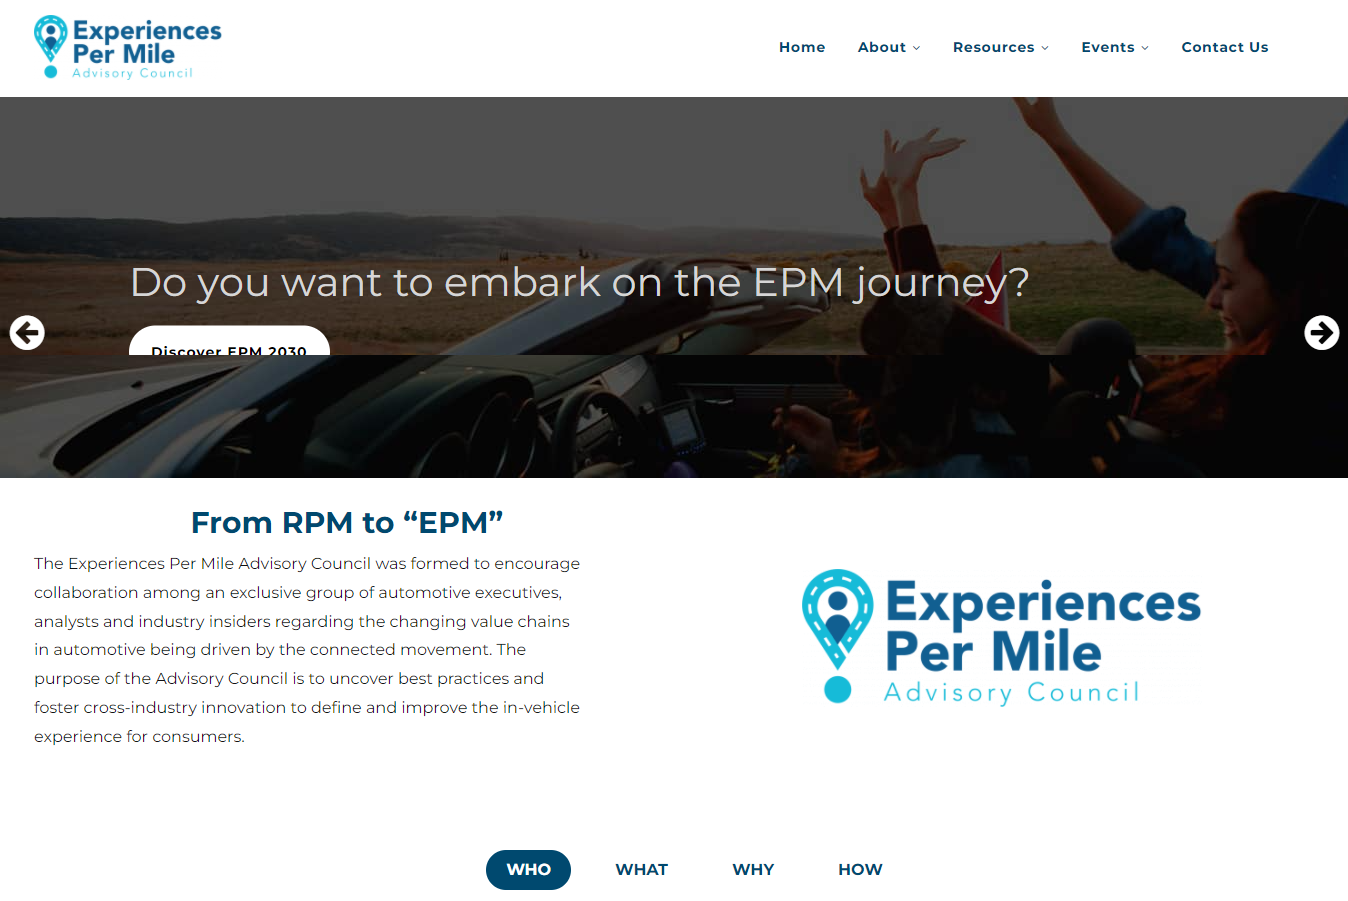 EPM (Experience Per Mile)